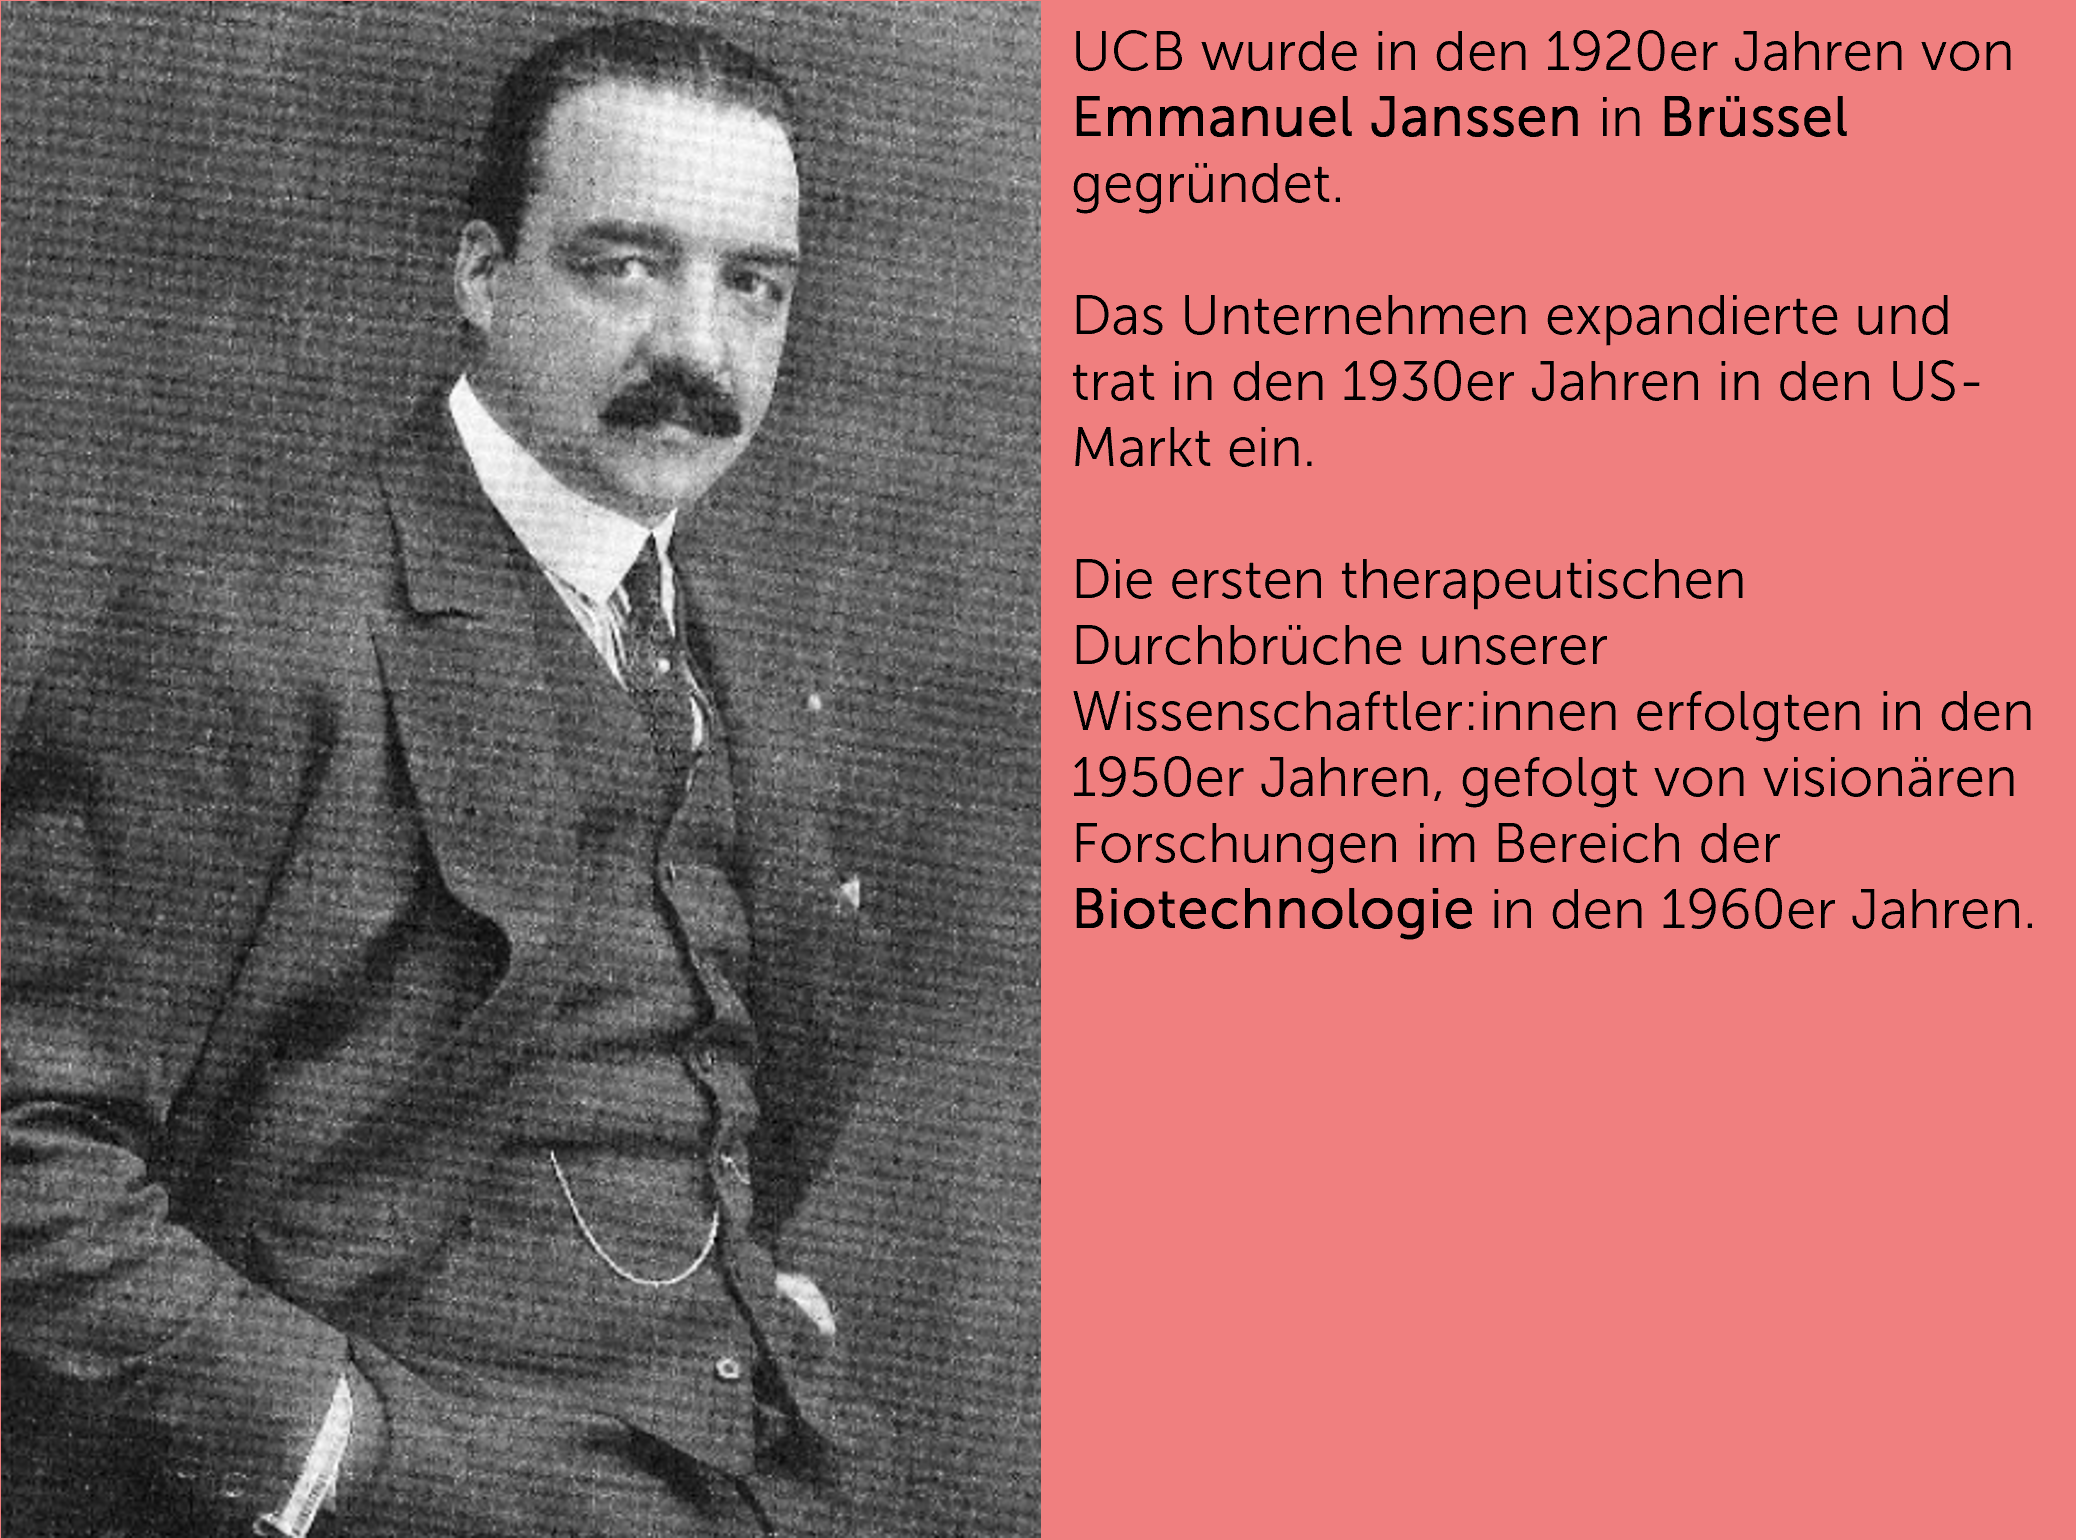 UCB wurde in den 1920er Jahren von Emmanuel Janssen in Brüssel gegründet.  Das Unternehmen expandierte und trat in den 1930er Jahren in den US-Markt ein.  Die ersten therapeutischen Durchbrüche unserer Wissenschaftler:innen erfolgten in den 1950er Jahren, gefolgt von visionären Forschungen im Bereich der Biotechnologie in den 1960er Jahren.